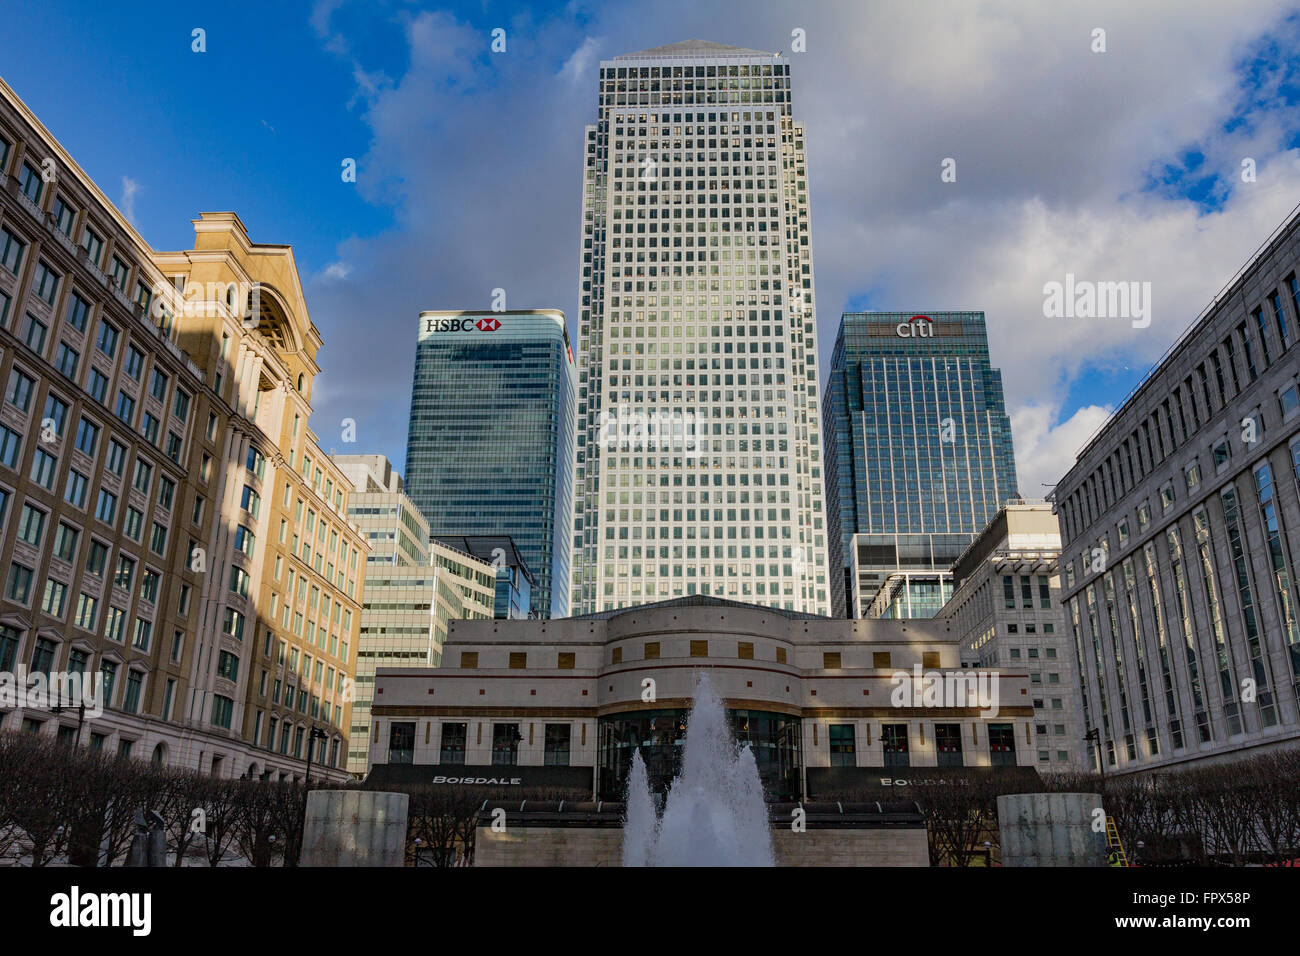 Die hoch aufragenden Bürogebäuden der London City Skyline Canary Wharf ab Cabot Square gesehen. 4. März 2015 Stockfoto